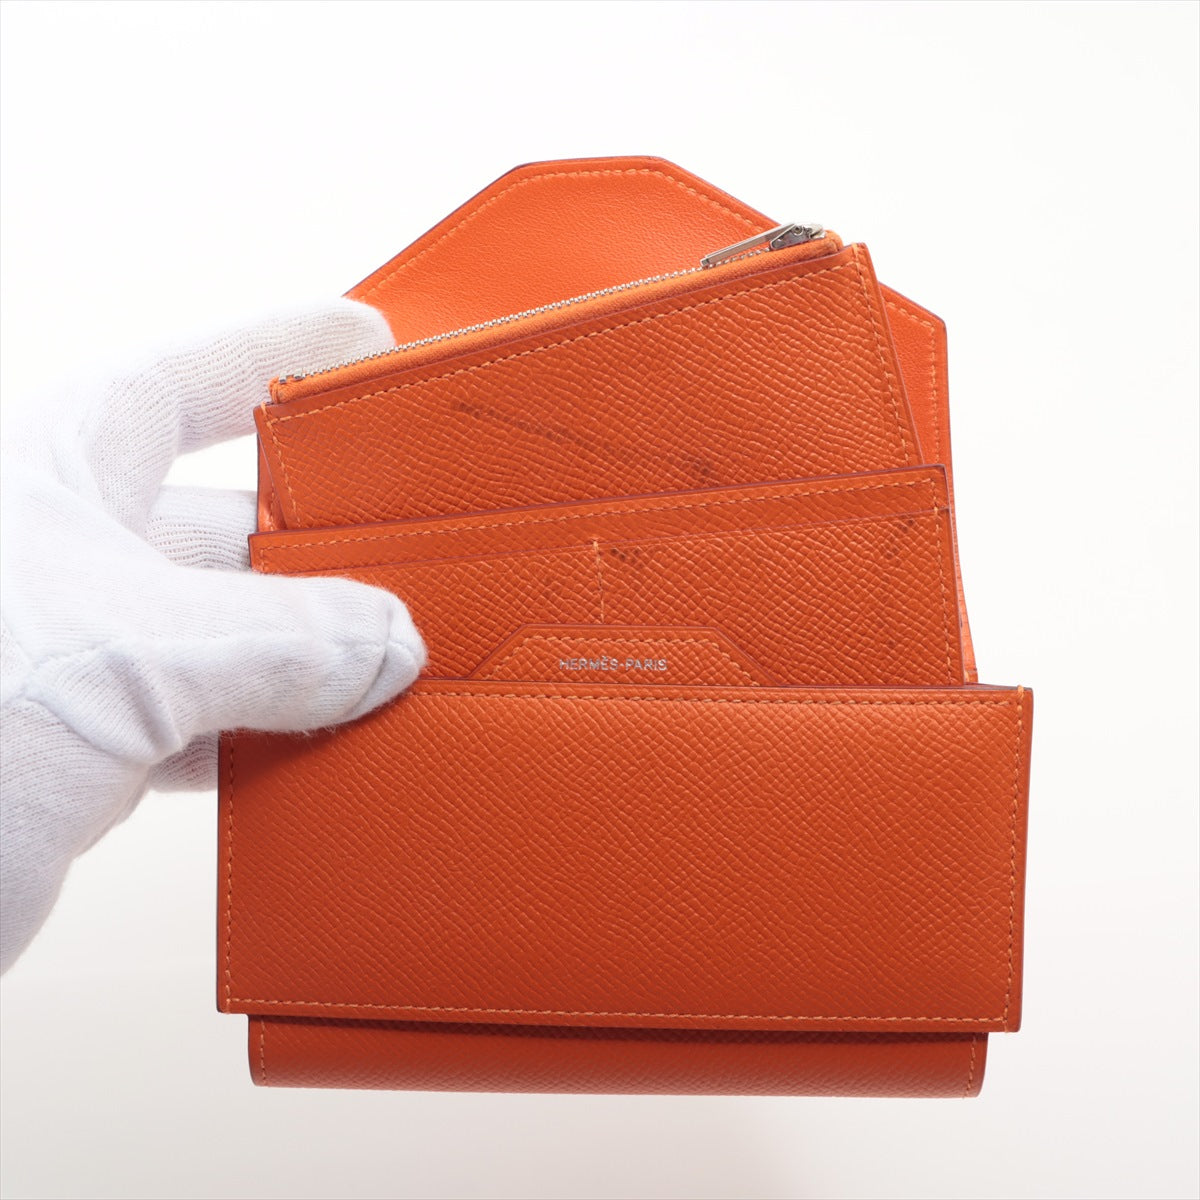 エルメス パッサンコンパクト ヴォーエプソン 財布 オレンジ シルバー金具 X:2016年